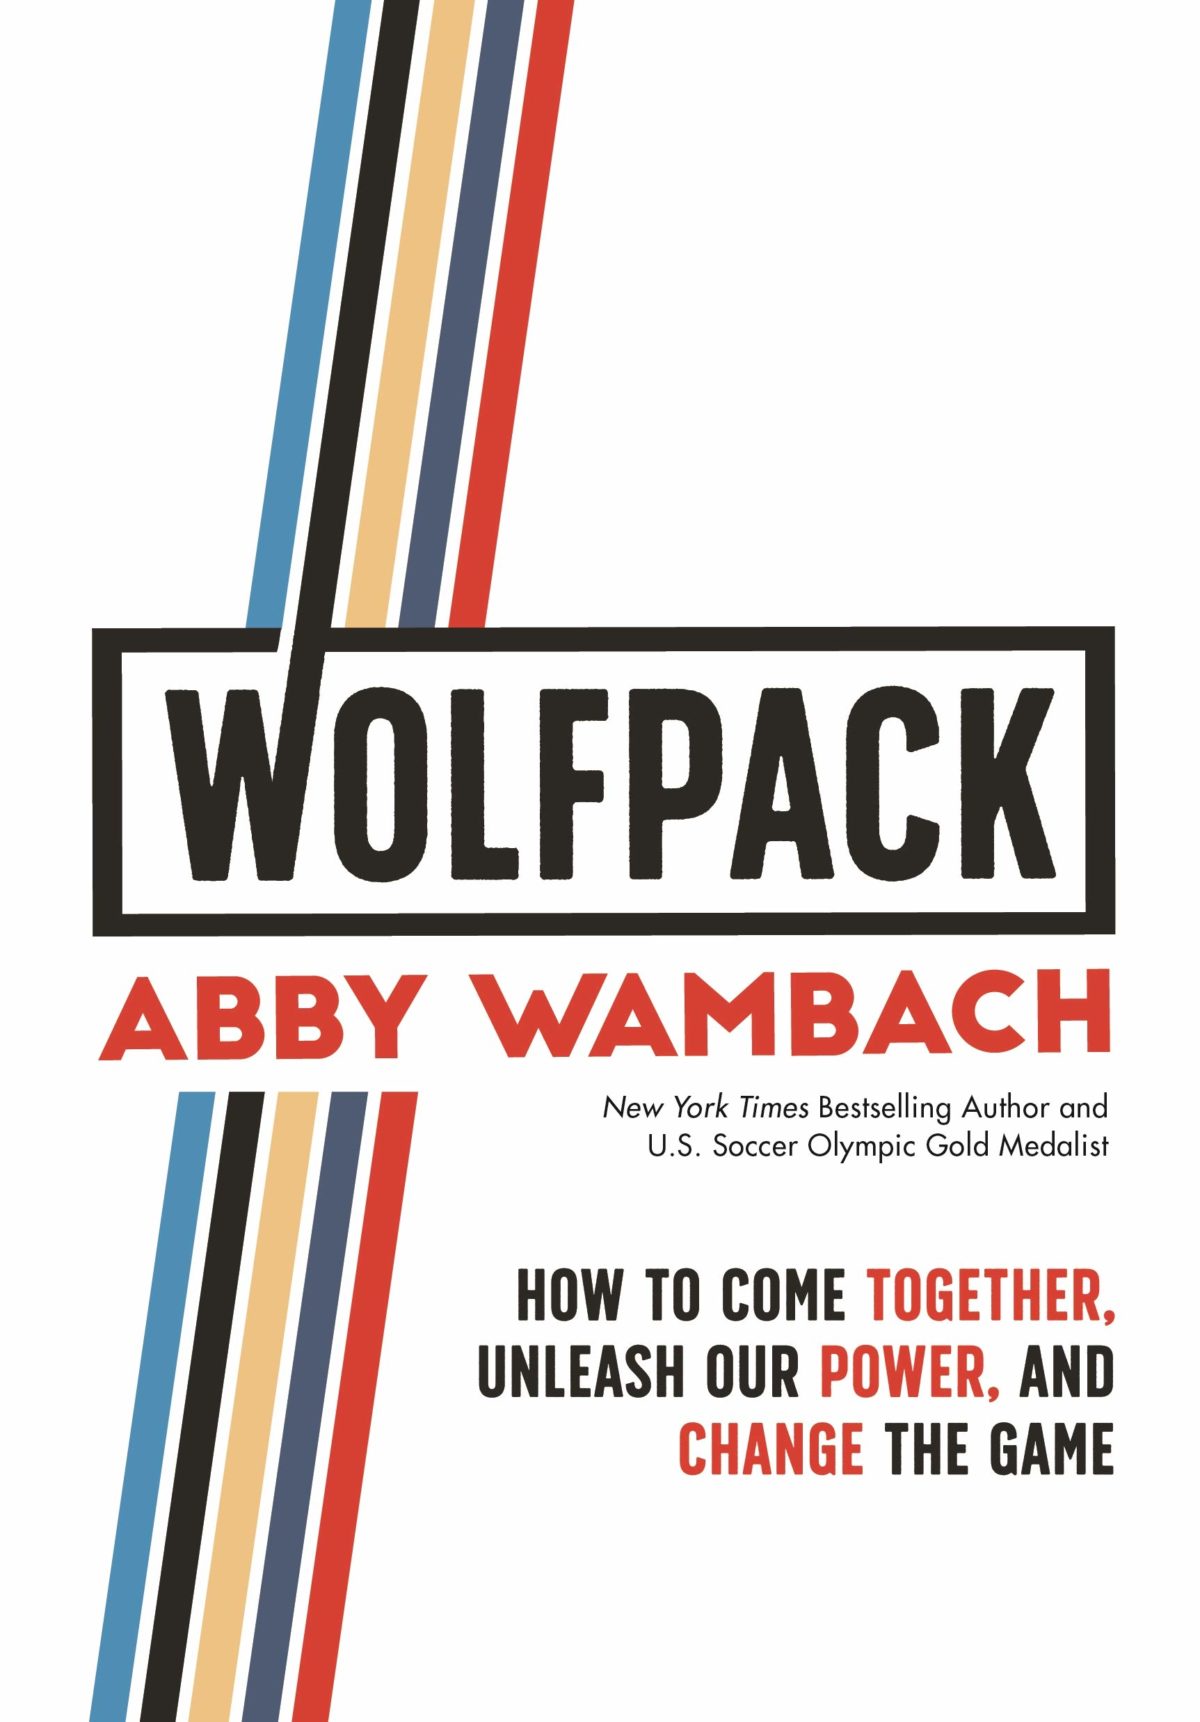 Abby Wambach's Book